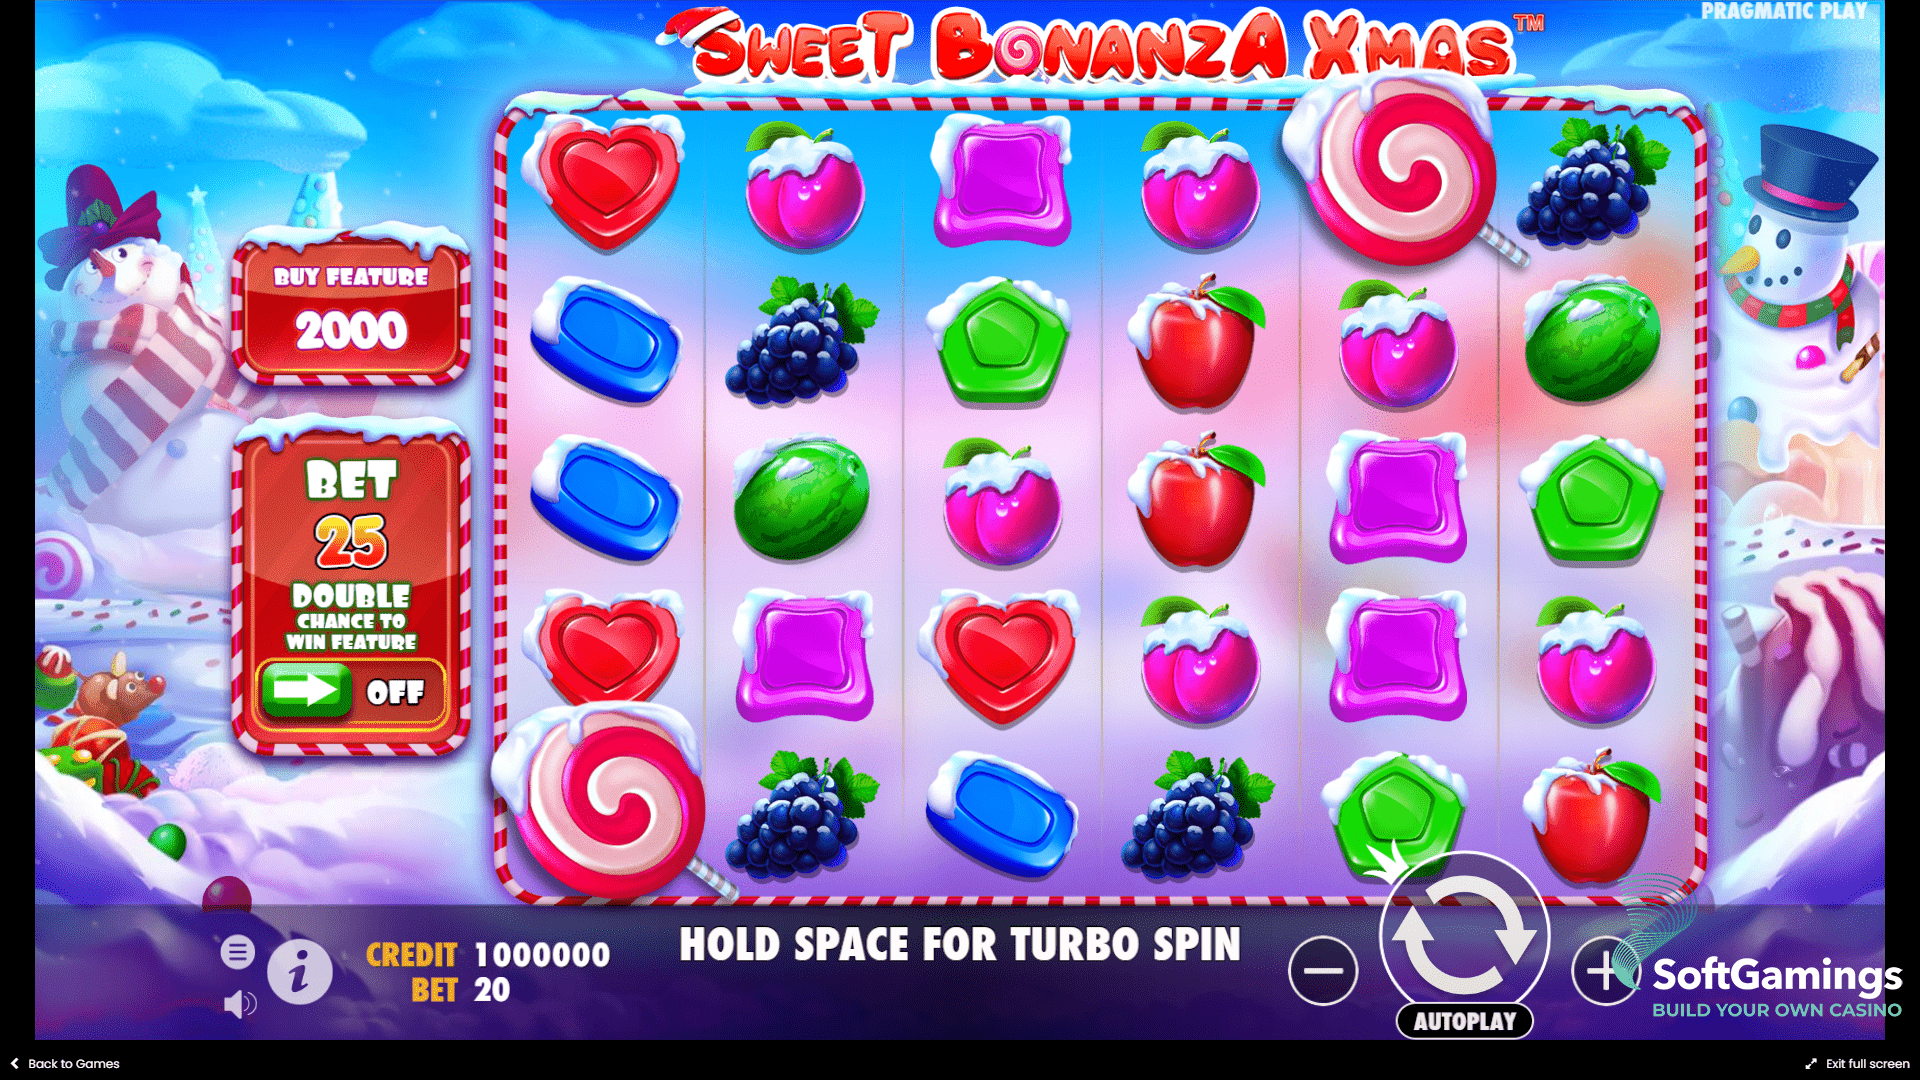 Sweet Bonanza Xmas - PragmaticPlay Games catalogue | SoftGamings